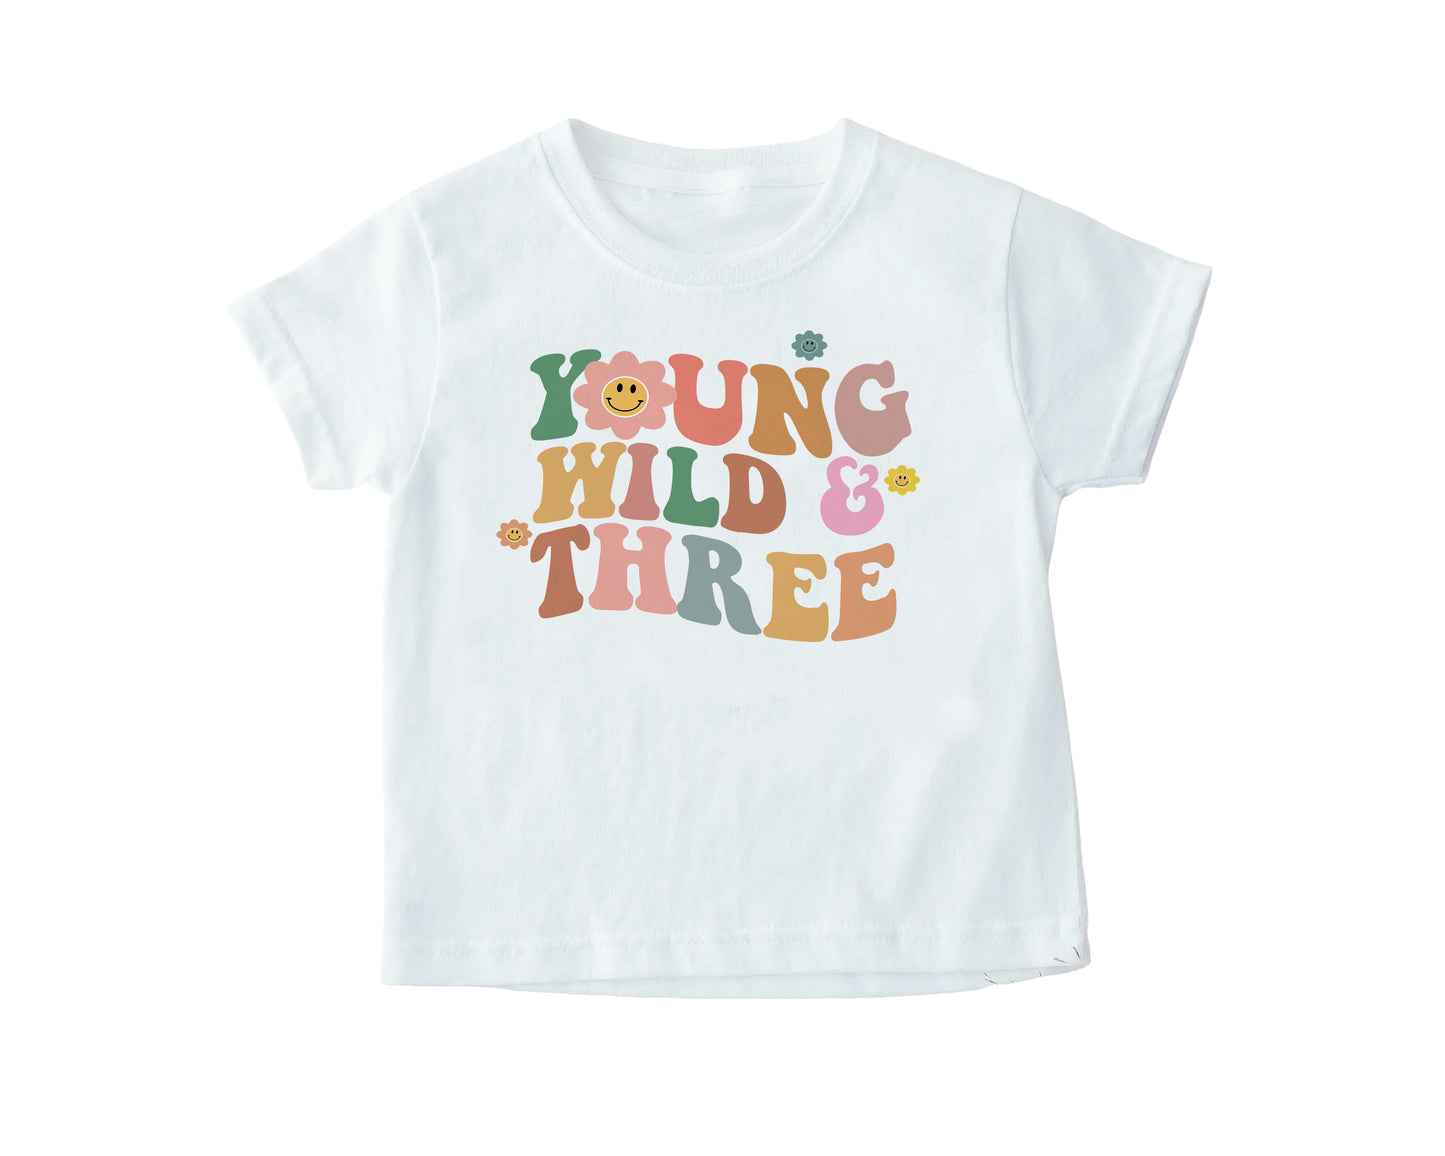 Young Wild and Three T-Shirt, Children's Retro T-Shirt